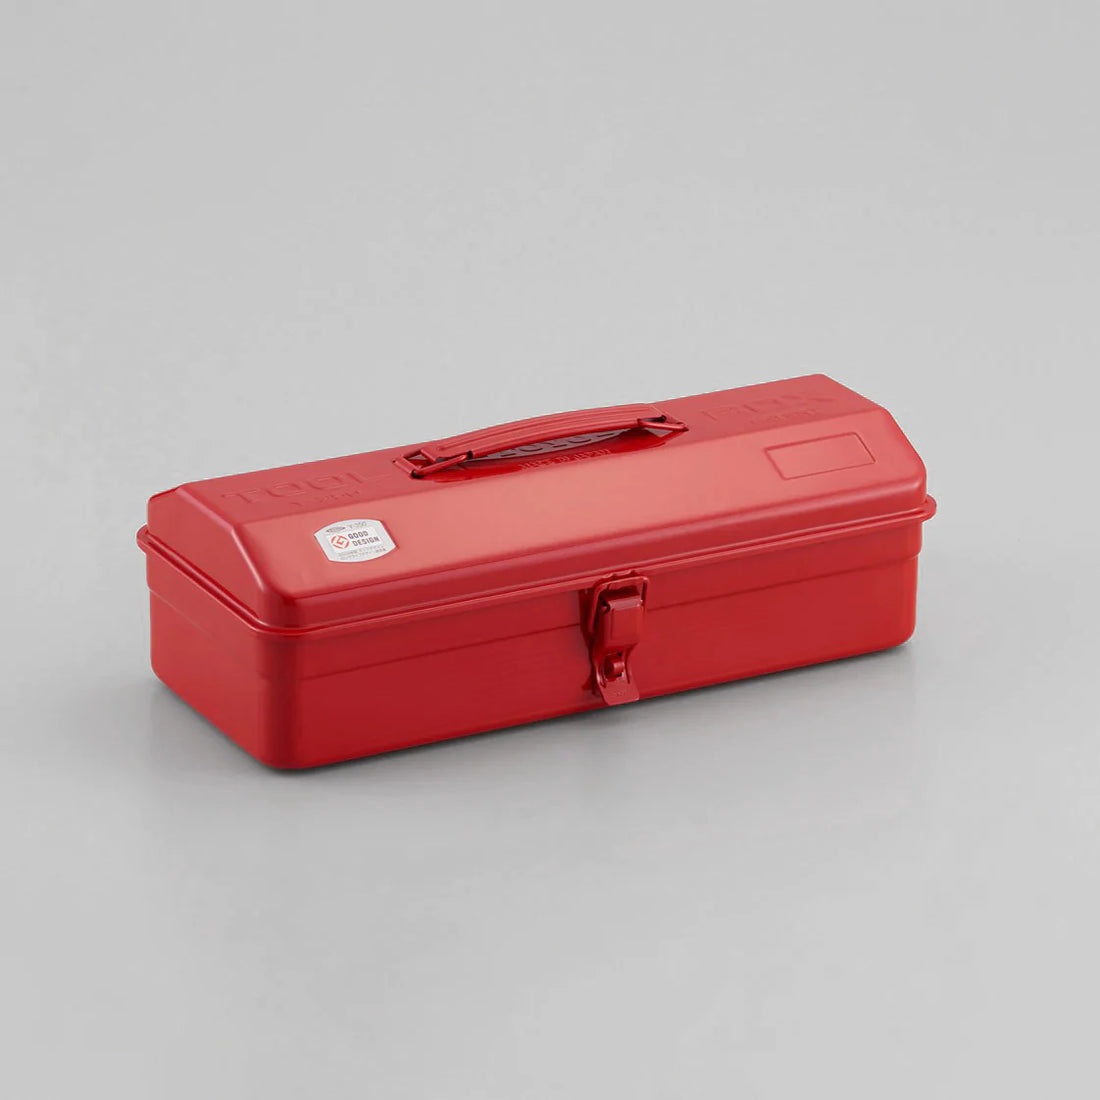 Toyo Tool Box Y-350 red | Brooklyn Haberdashery